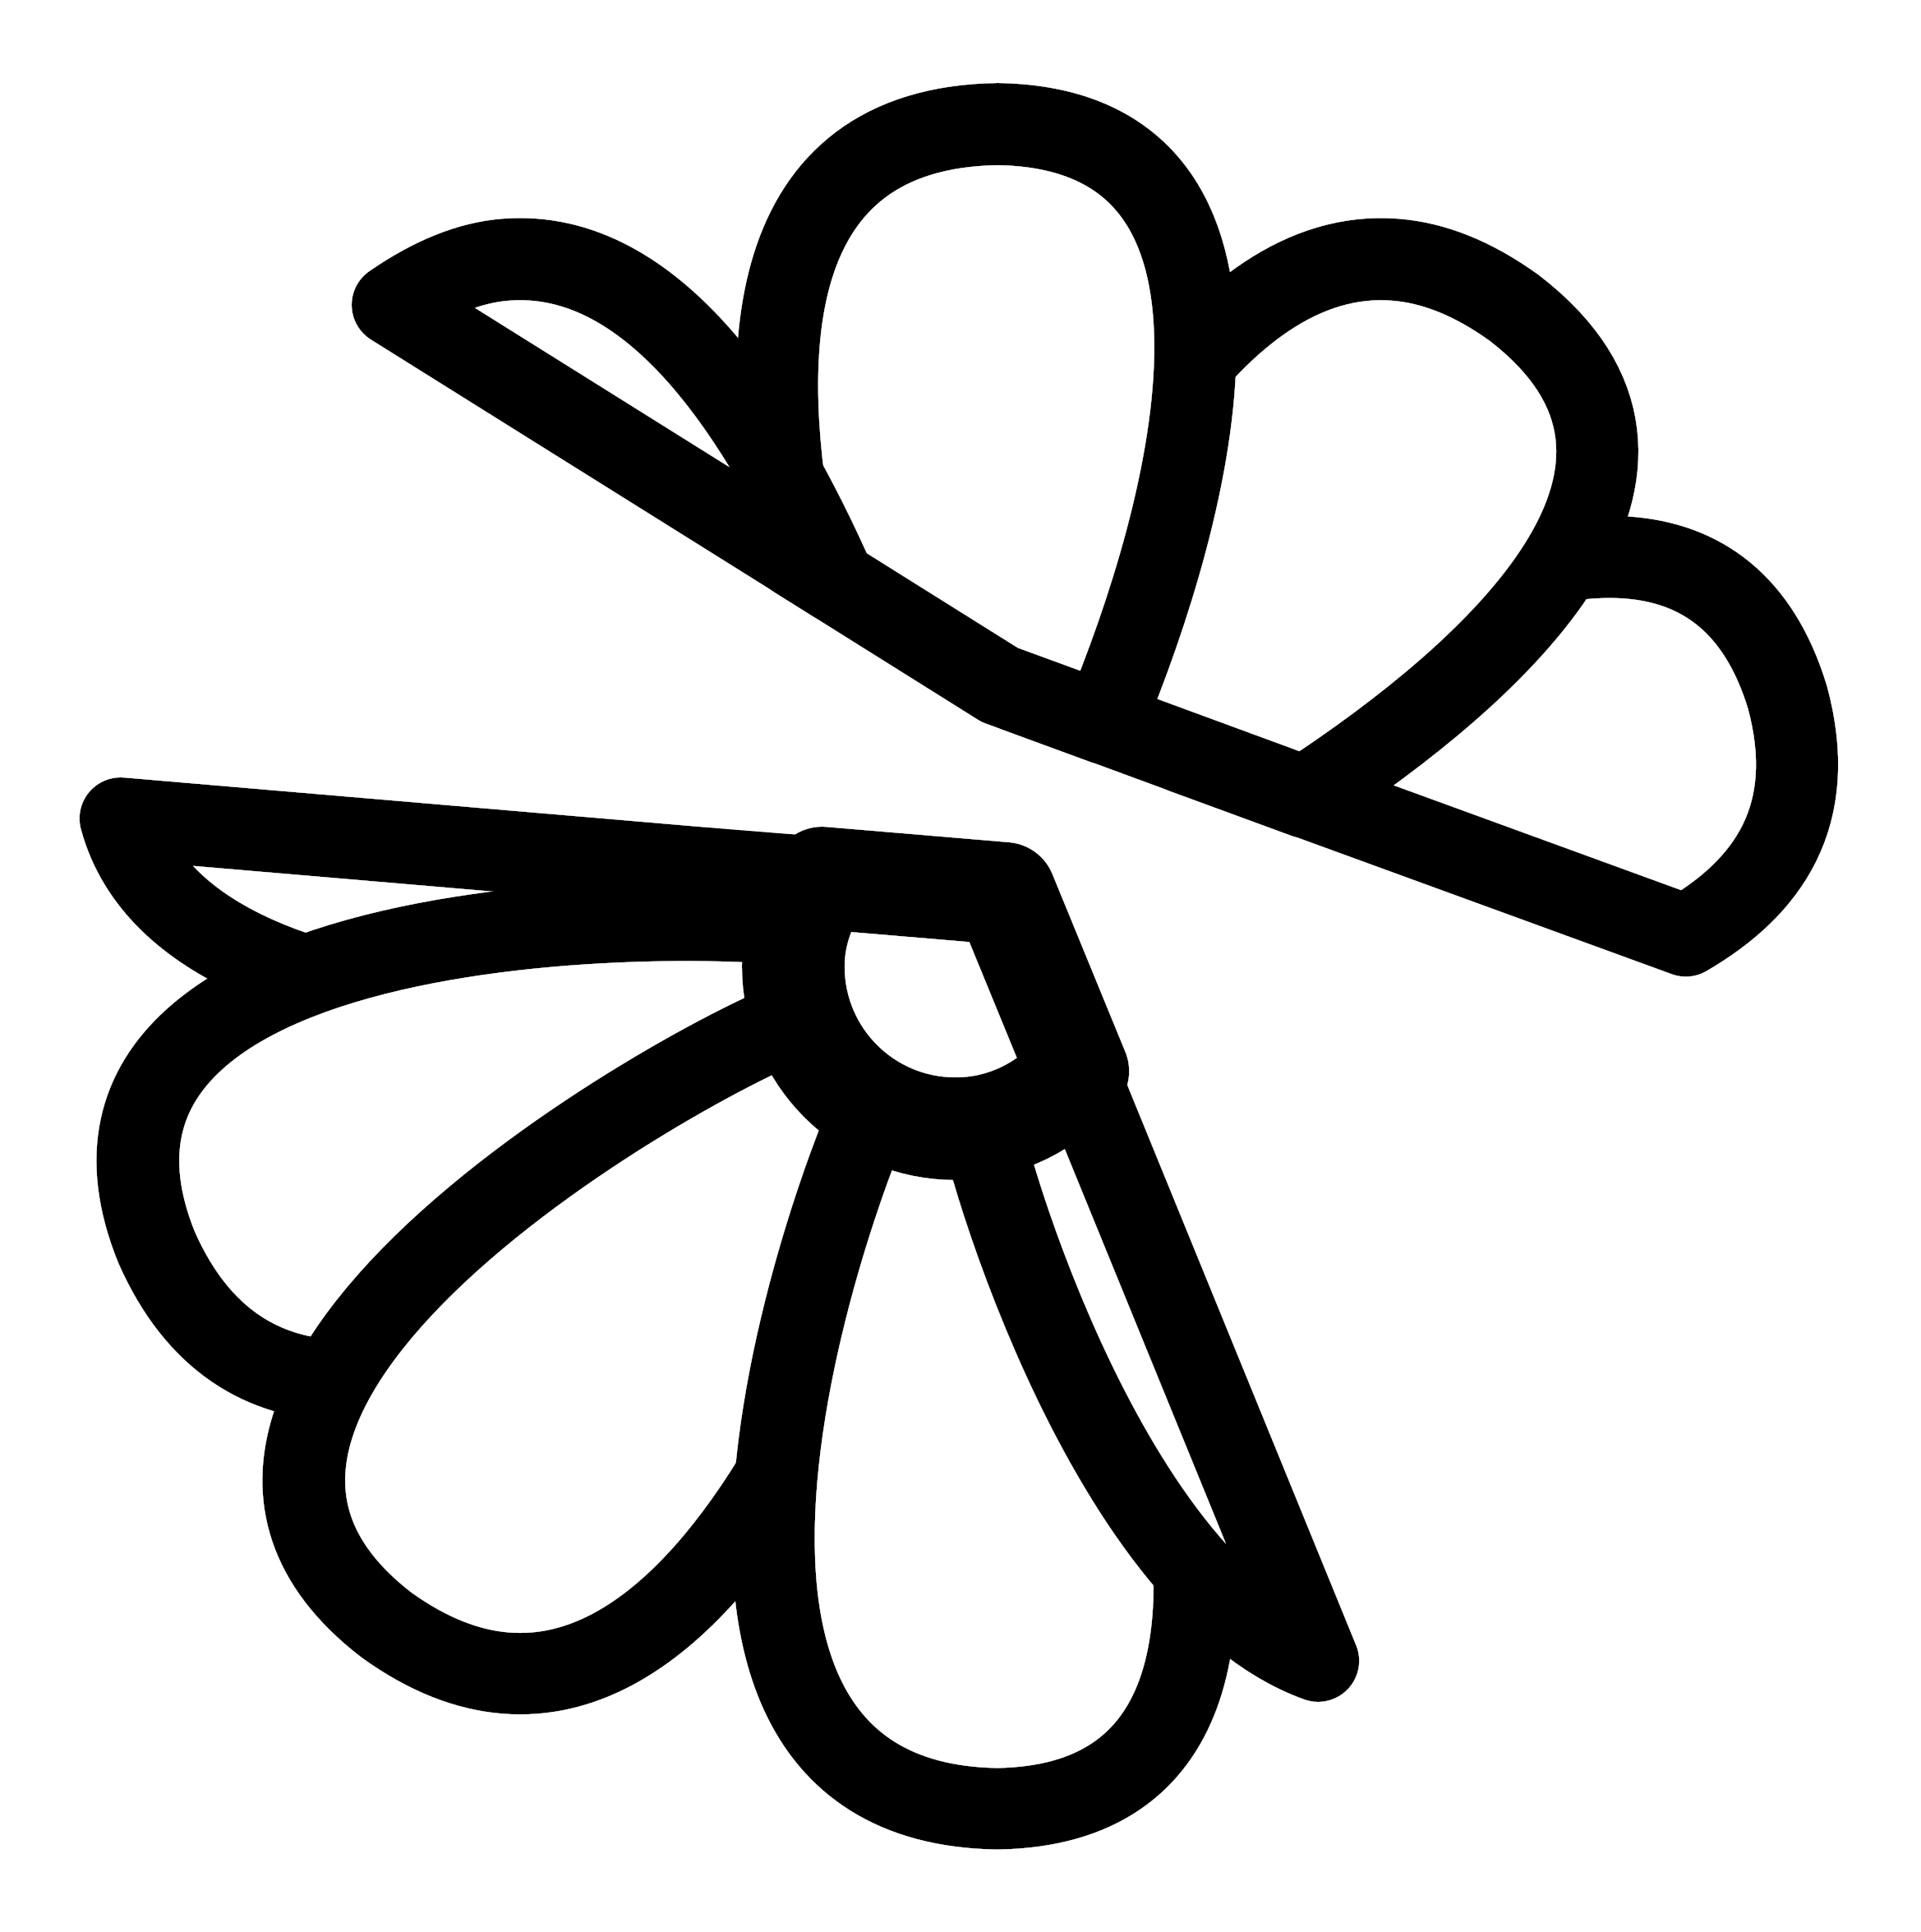 ICQ Logo PNG görüntüleri